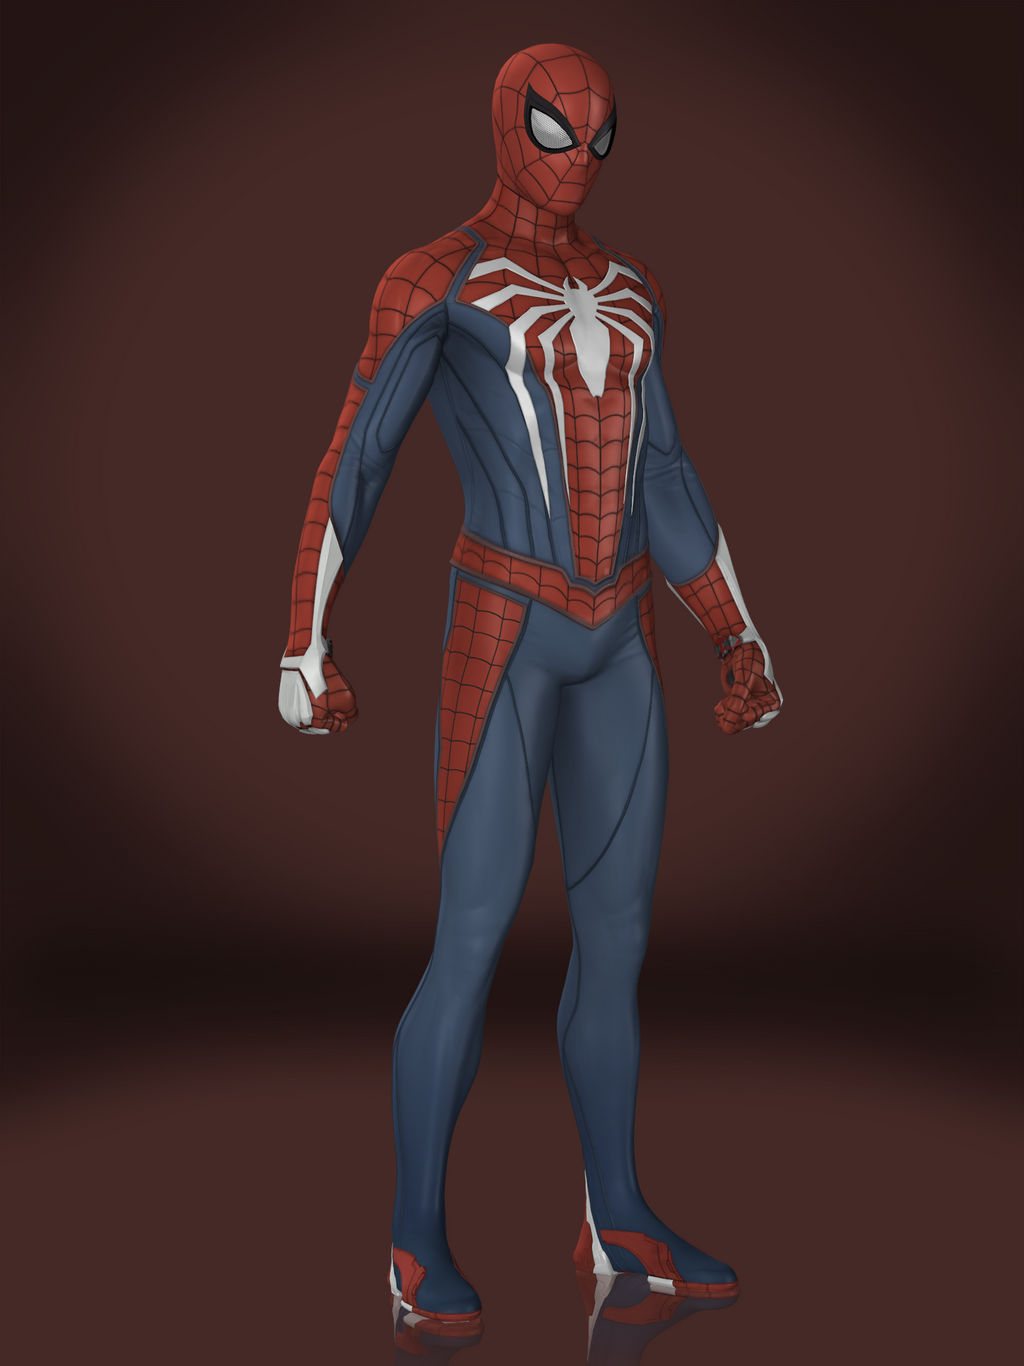 Spider-Man (Advanced Suit) by Sticklove on DeviantArt